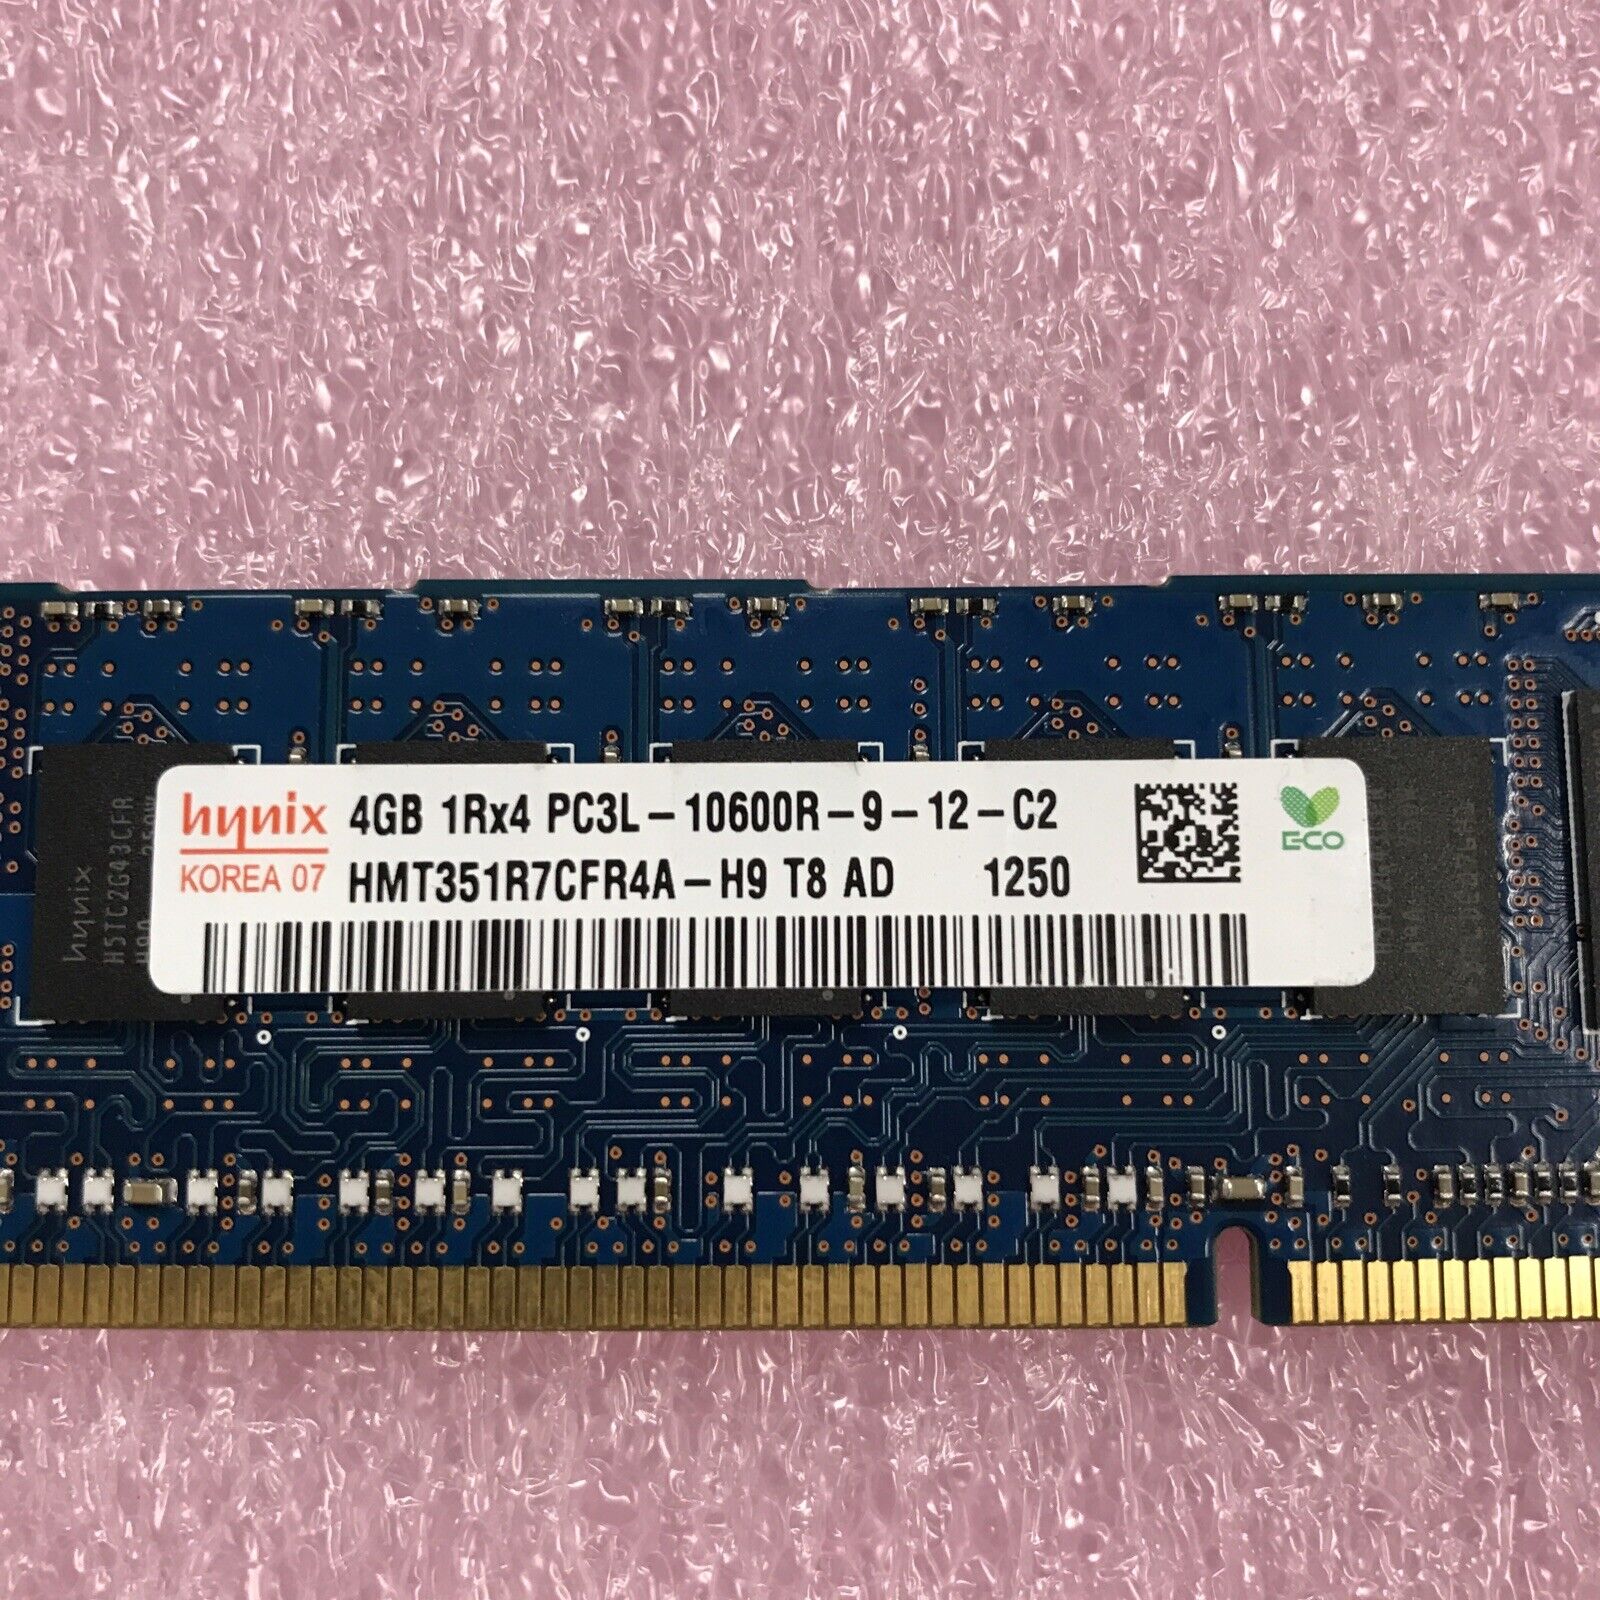 Hynix 8GB Kit 2x4GB PC3L-10600R-9-12-C2 Server Ram HMT351R7CFR4A-H9 DDR3